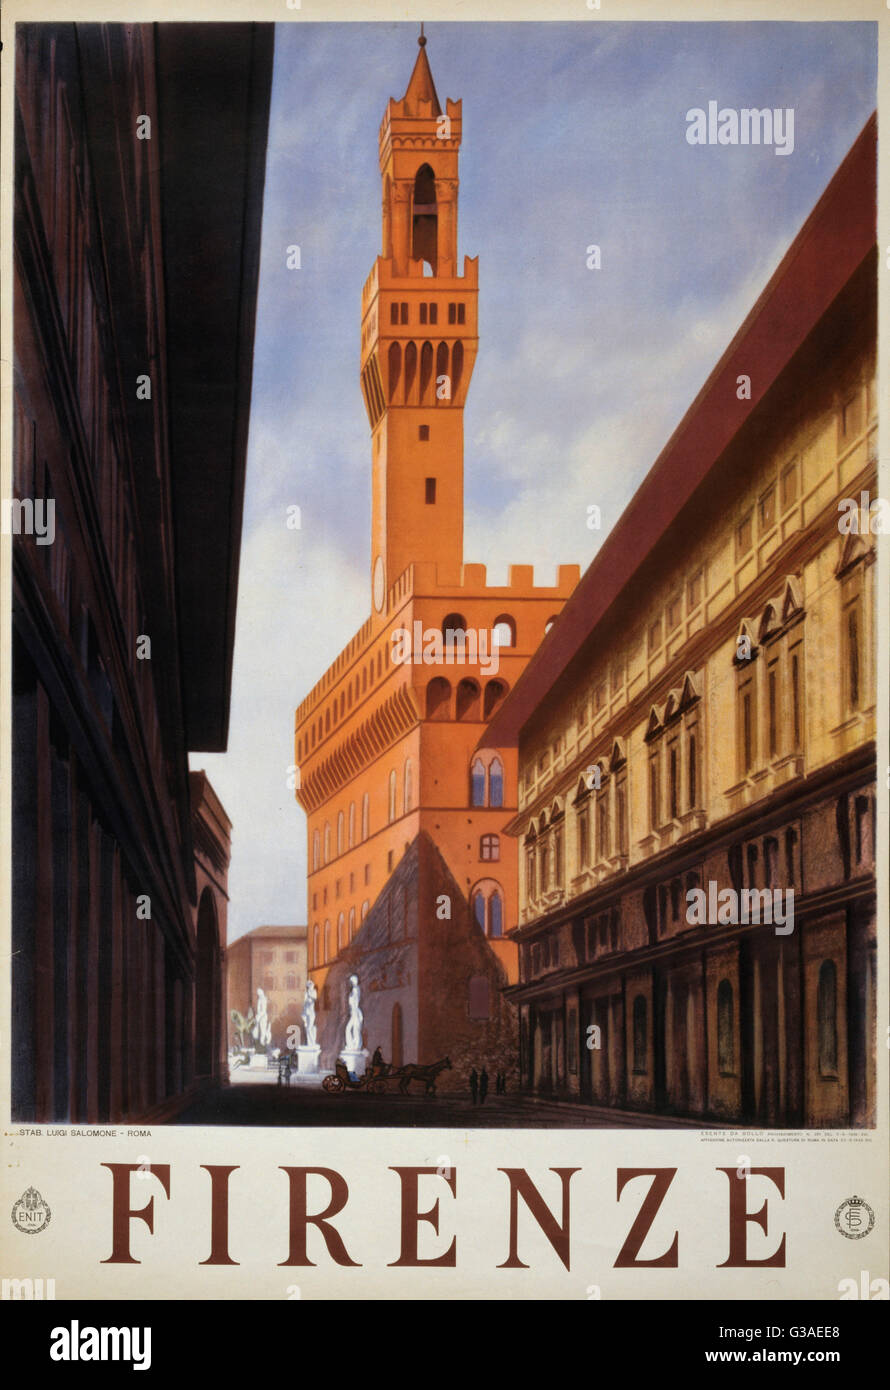 Firenze. Plakat zeigt eine historische Straße in Florenz. Datum, 1938. Stockfoto